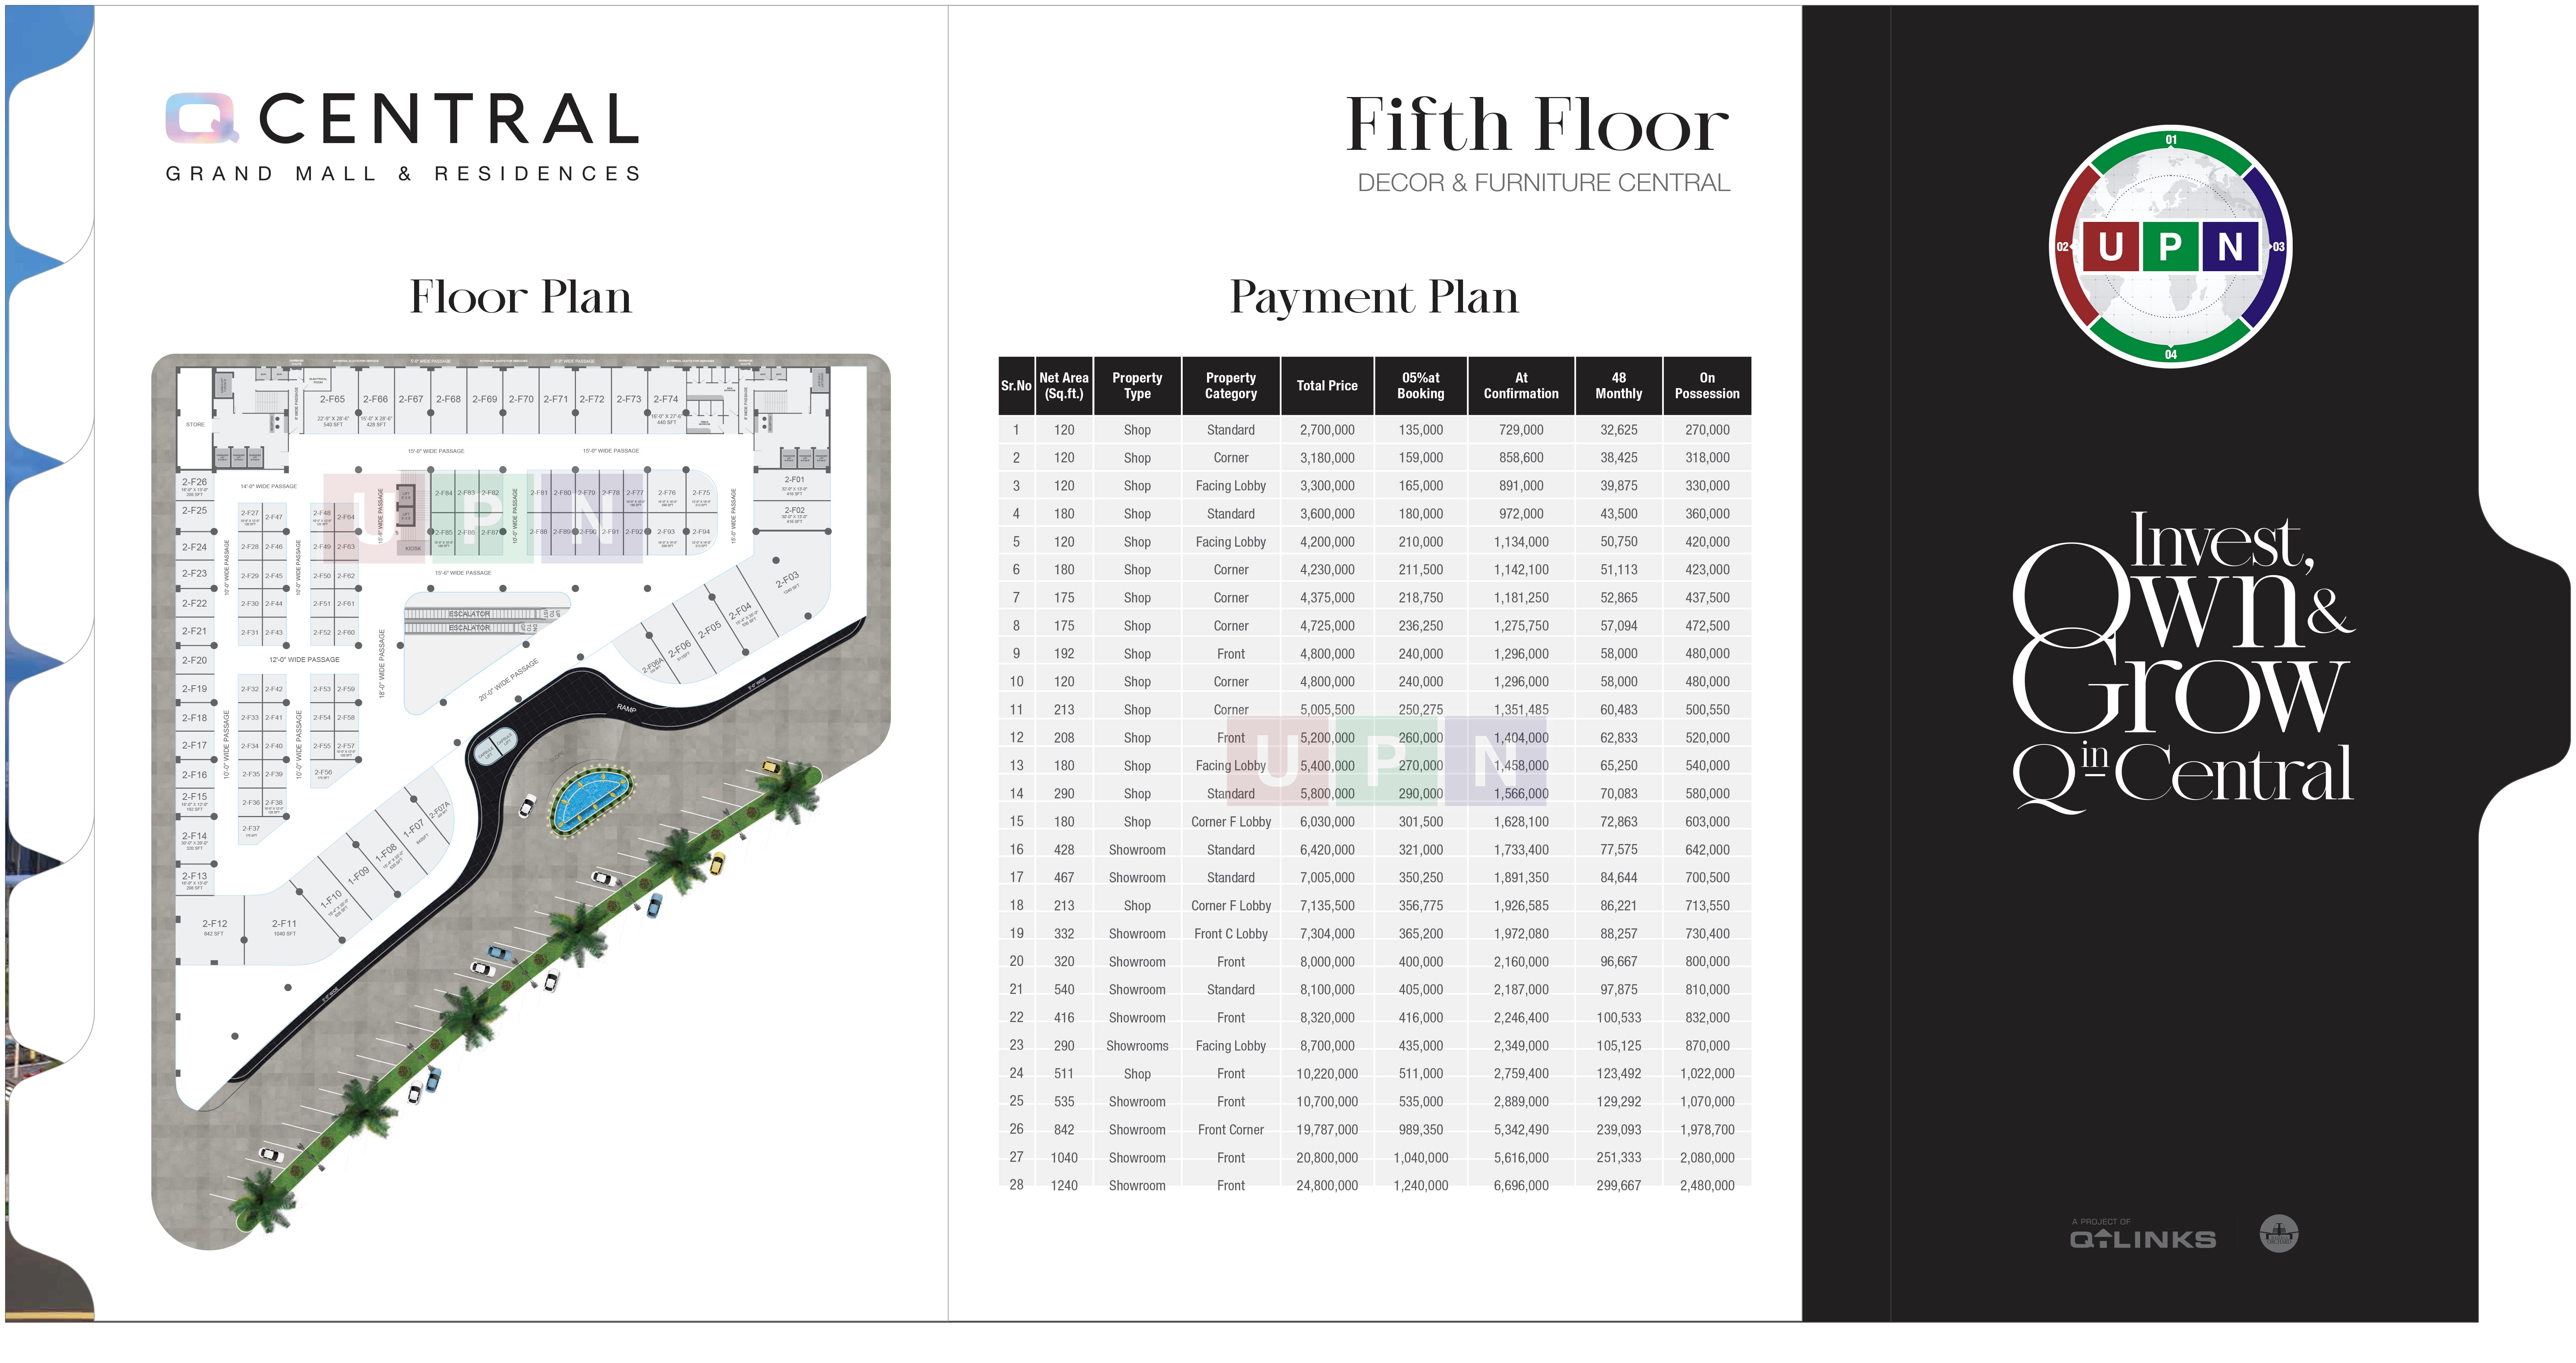 Fifth Floor Payment Plan